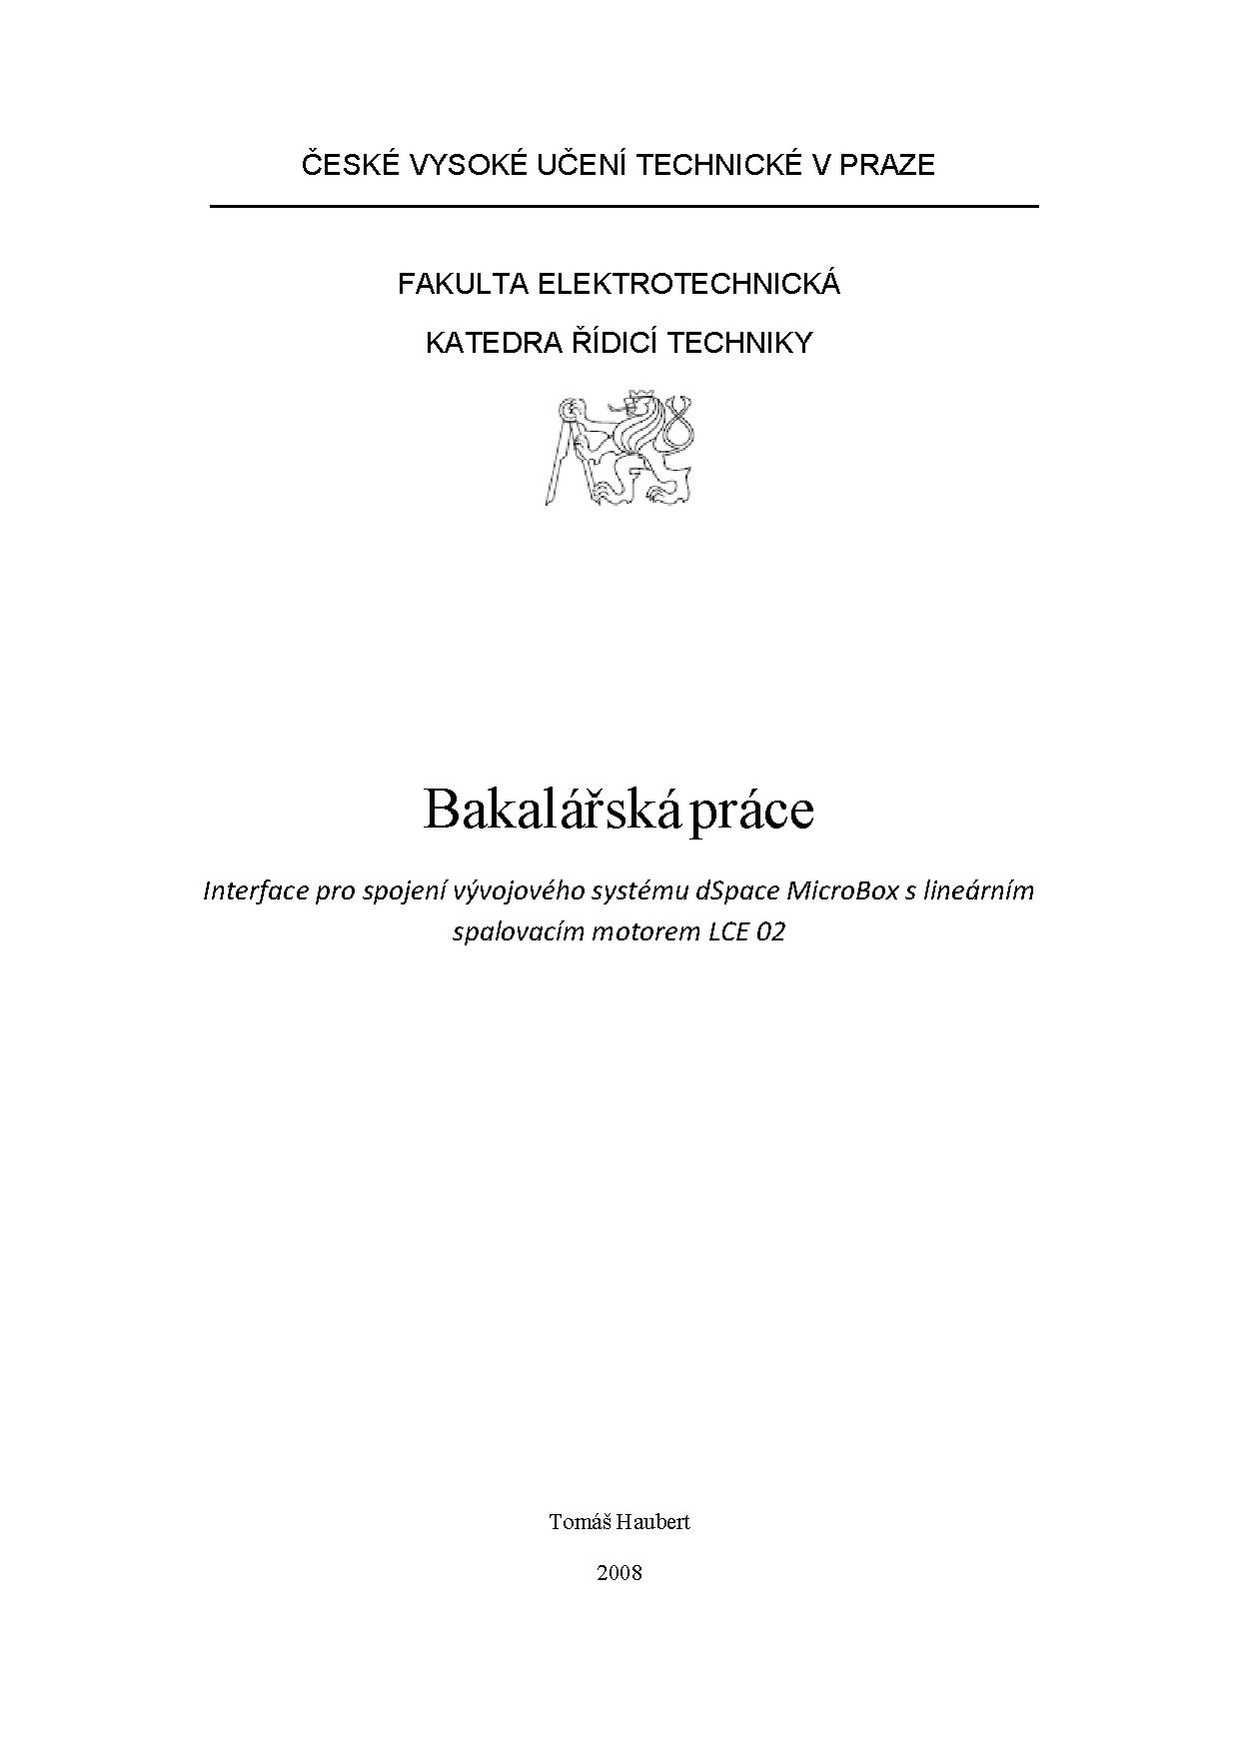 Bp 2008 haubert tomas.pdf